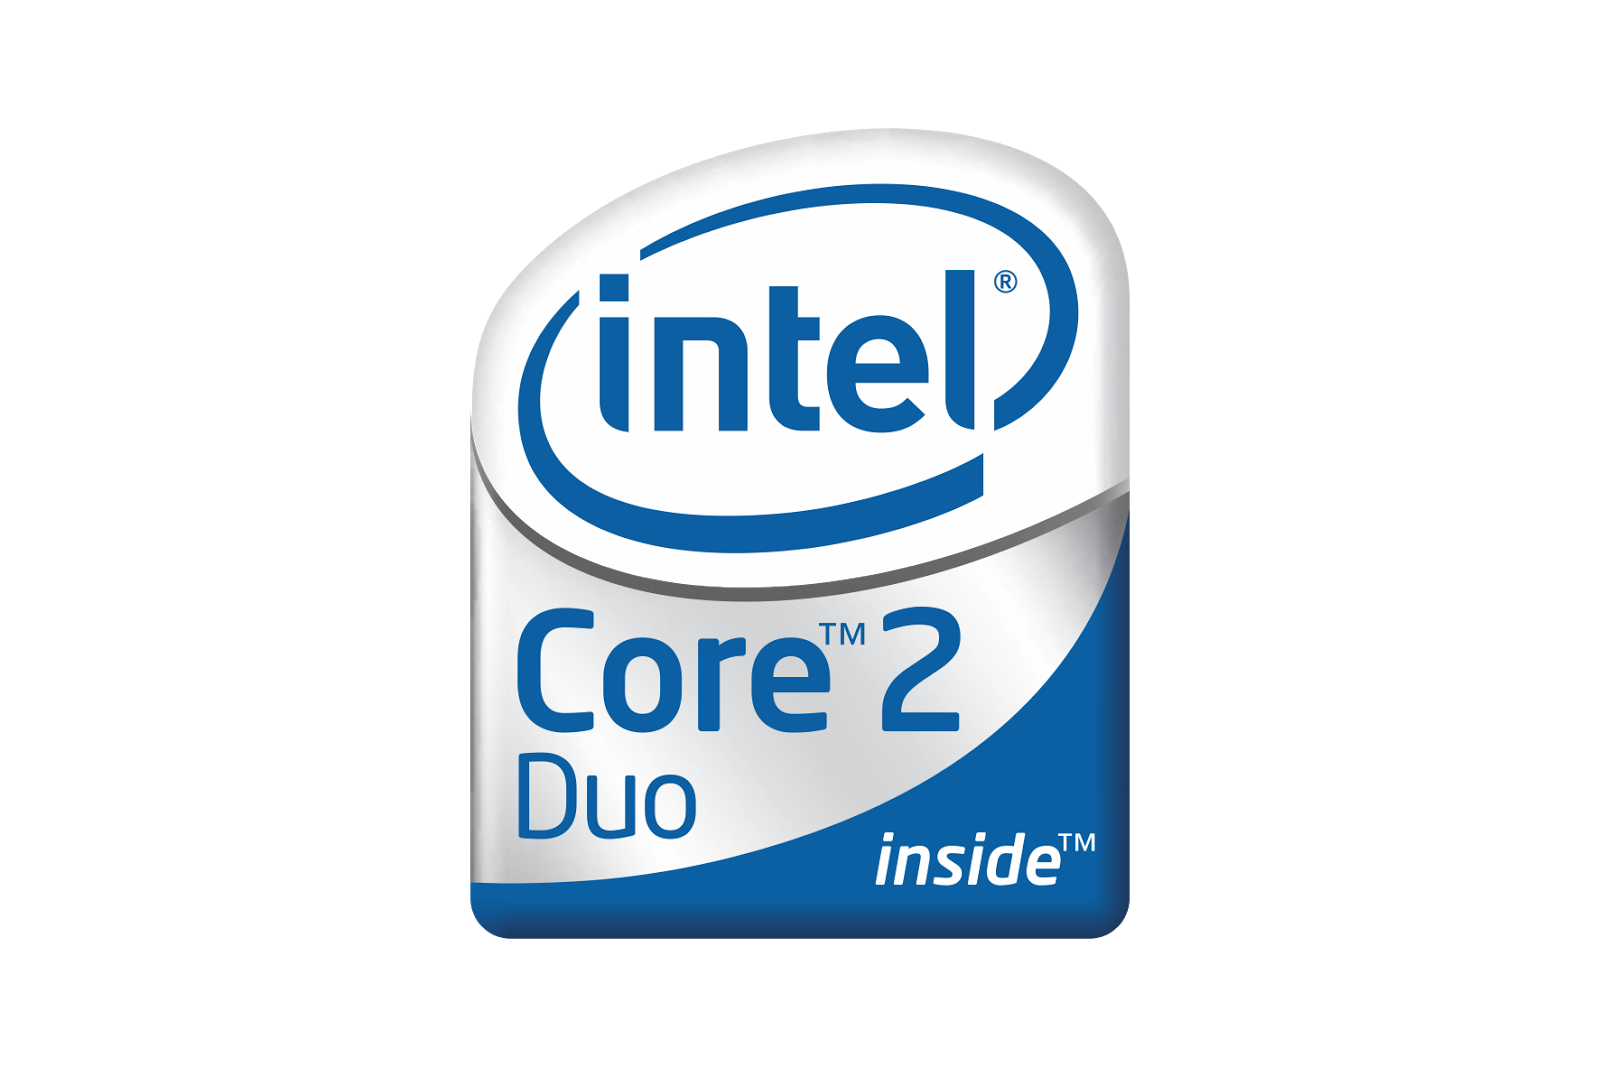 Core2 Duo logo